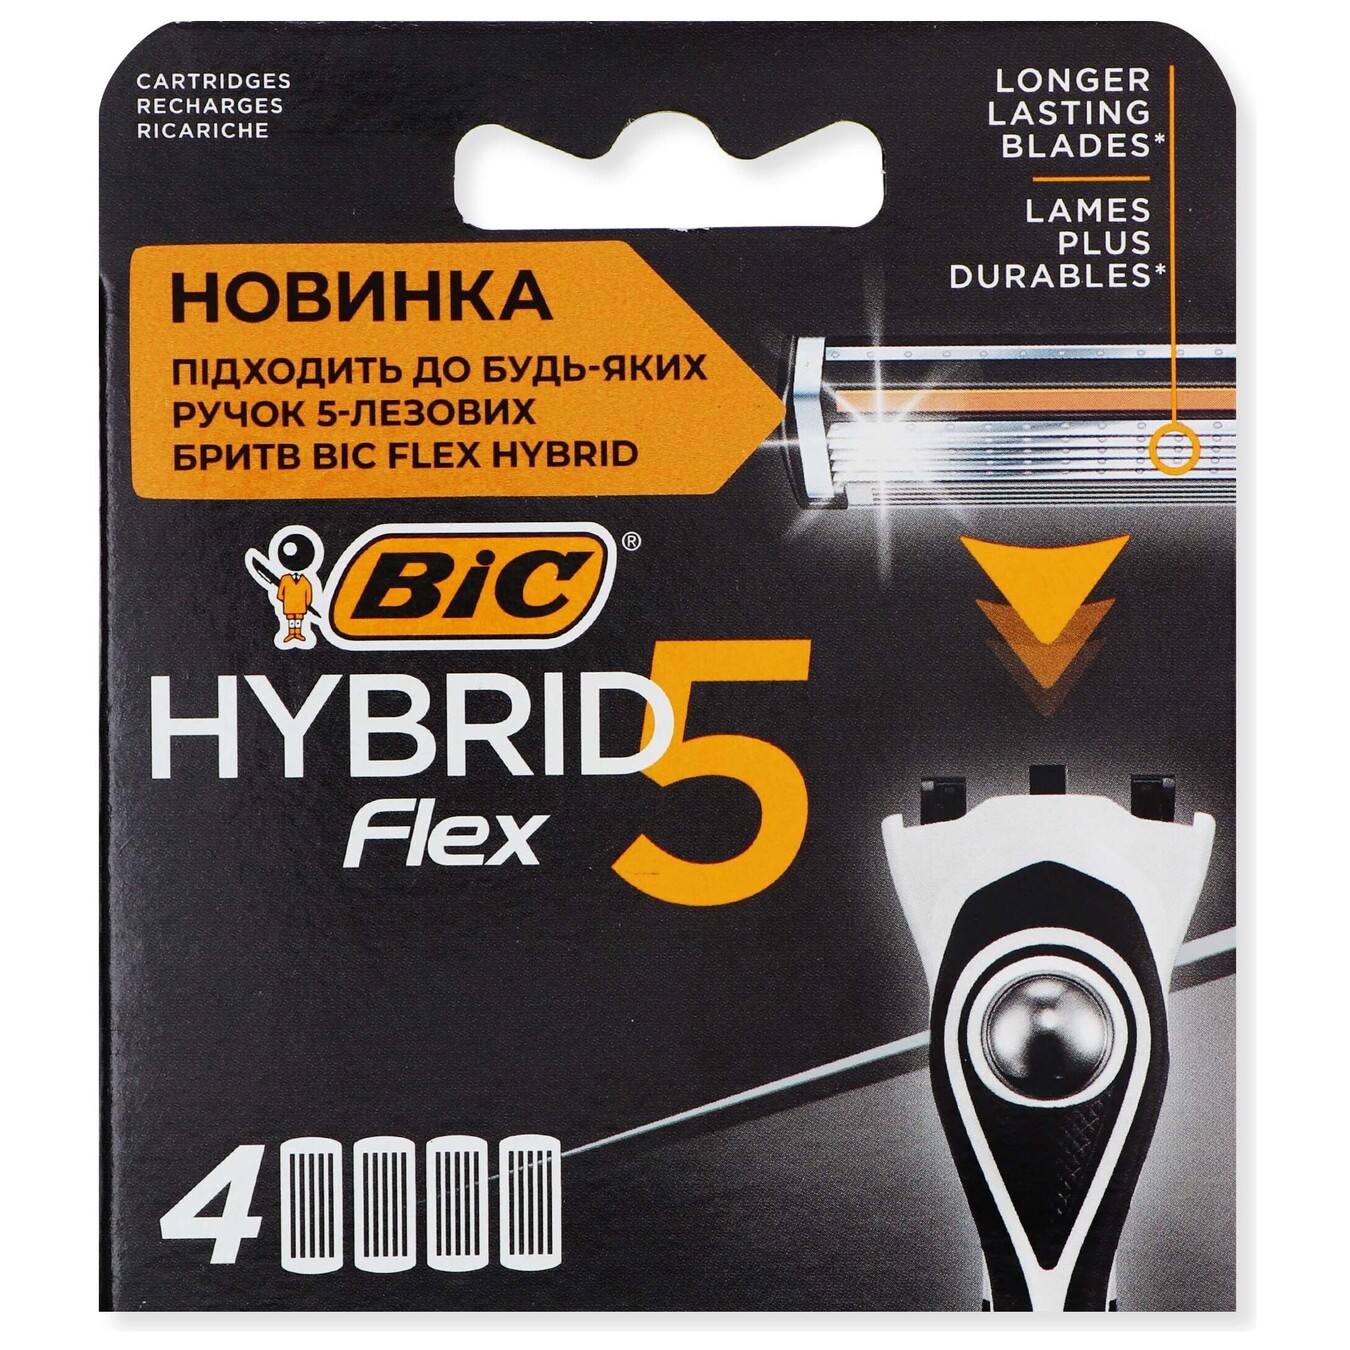 Картридж BIC Hybrid Flex5 4шт